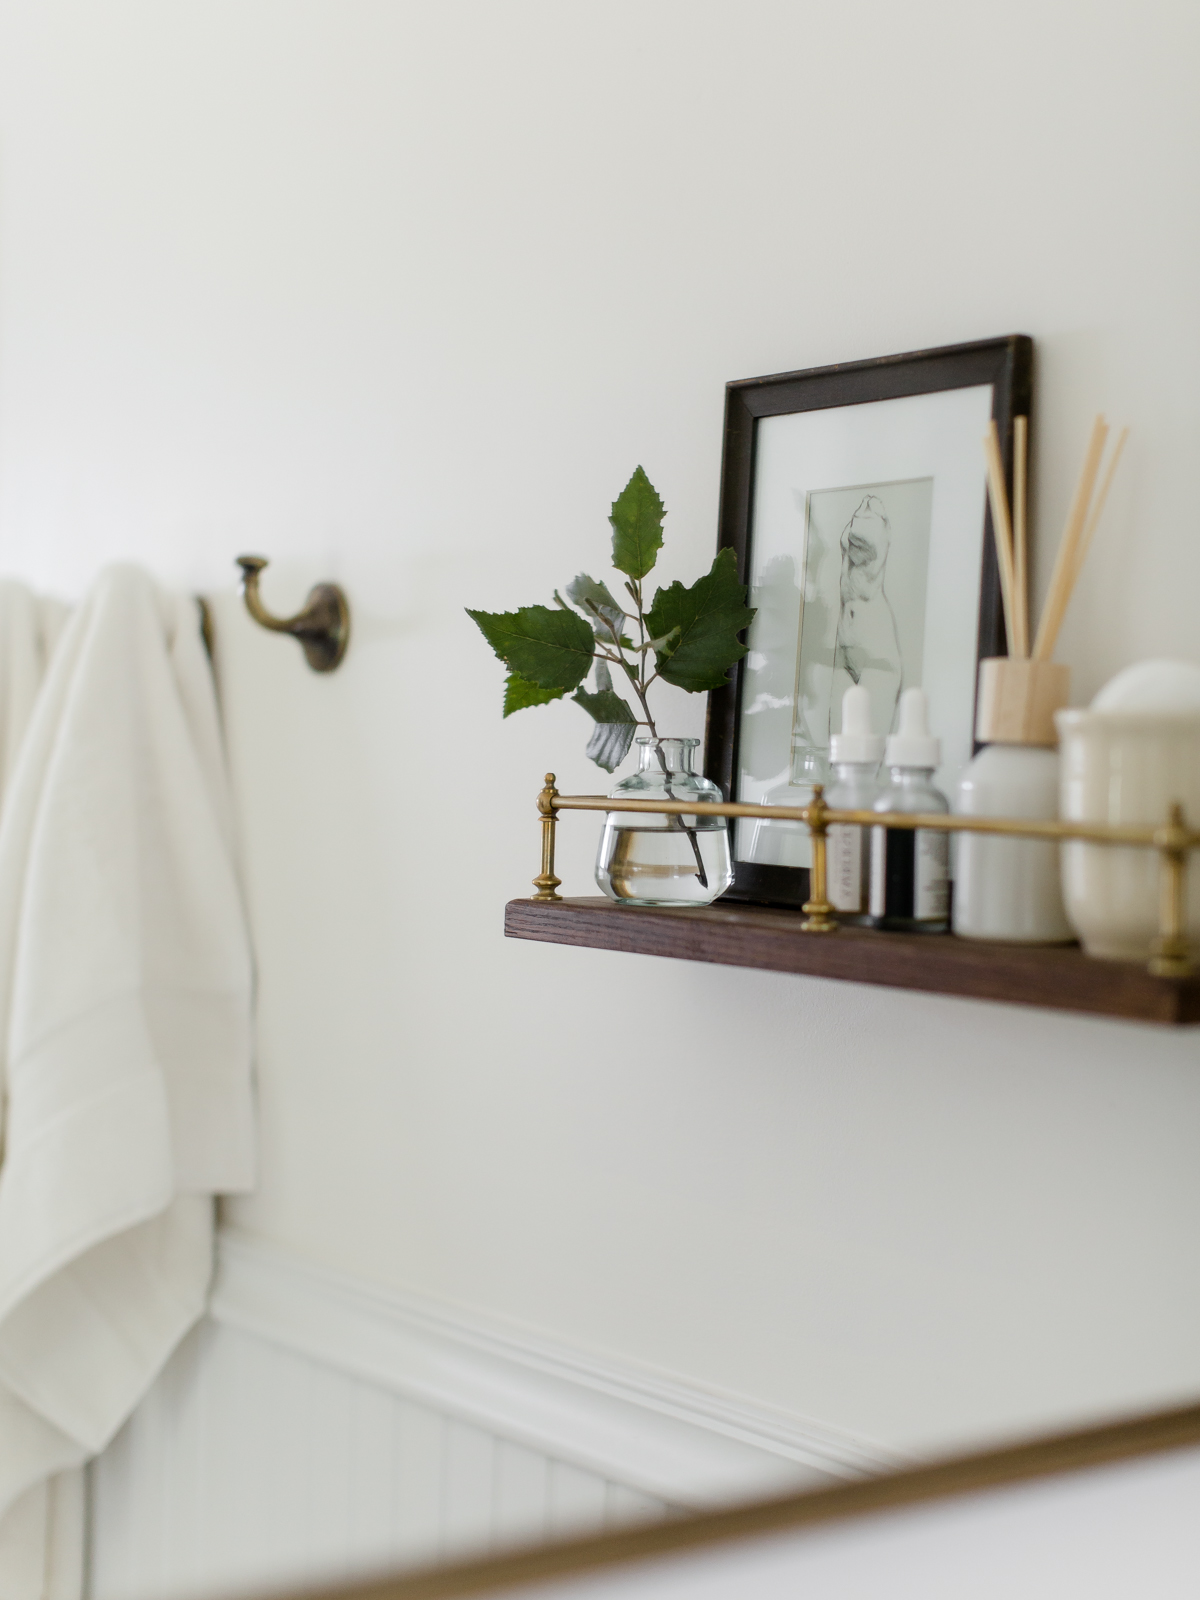 DIY Bathroom Shelf With Brass Gallery Rail